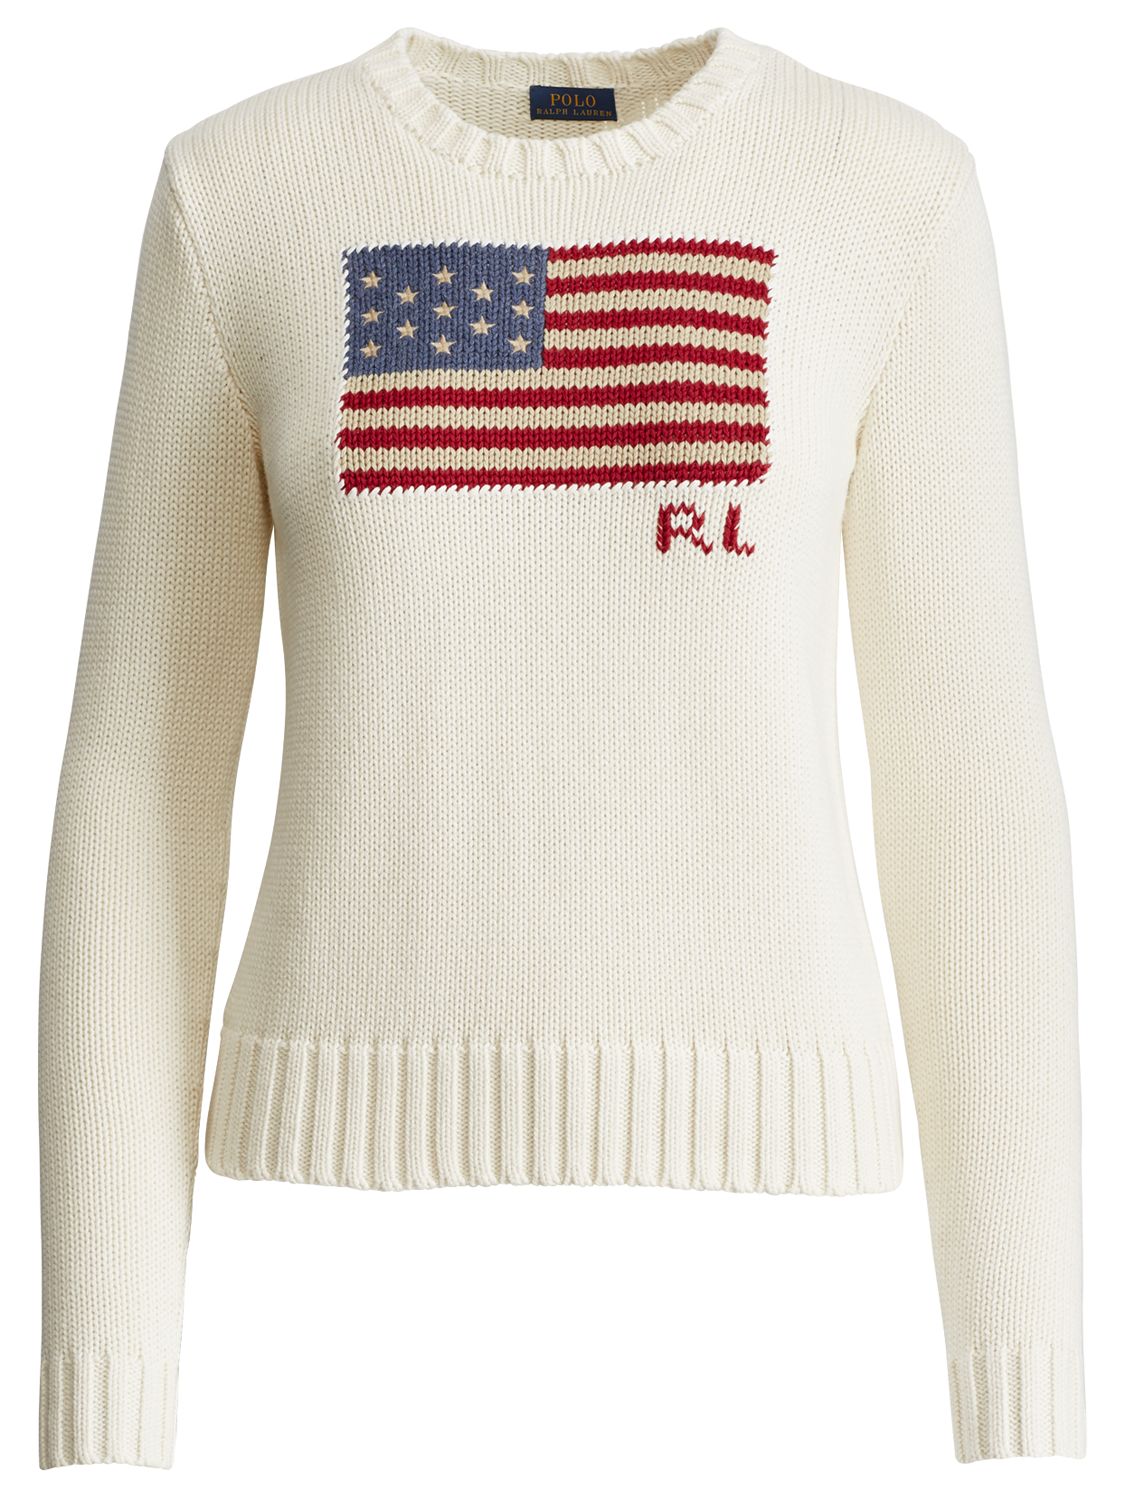 womens ralph lauren flag sweater